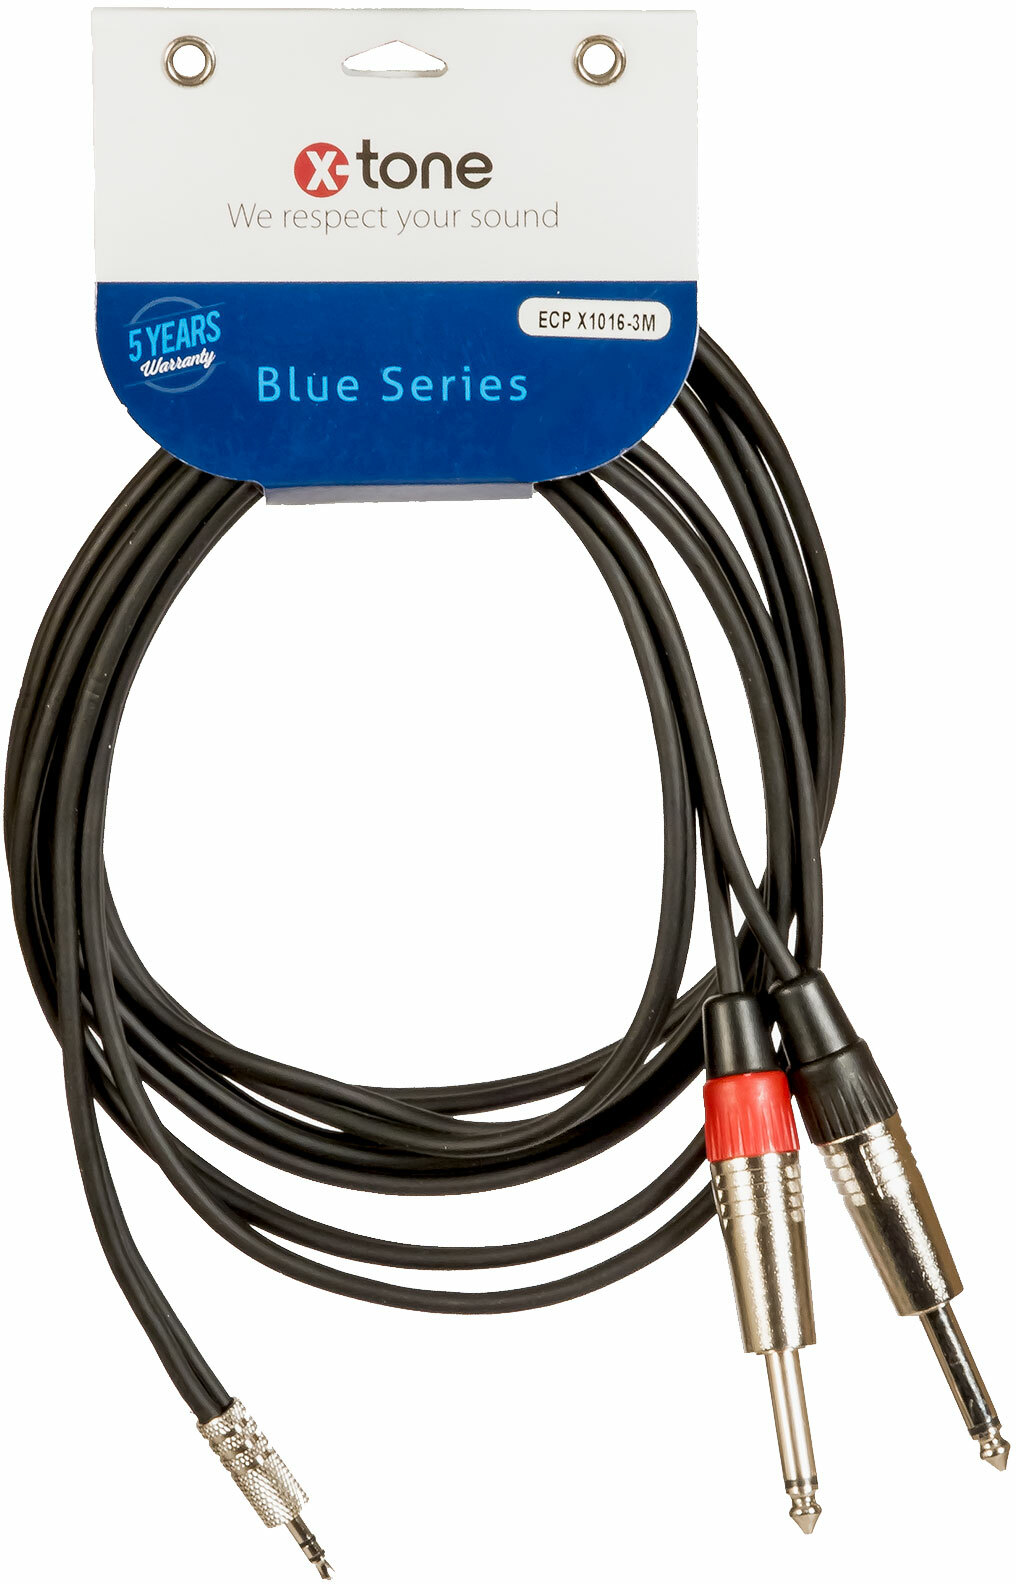 X-tone Mini Jack St / 2 Jack 3m Blue Series (x1016-3m) - CÂble - Main picture